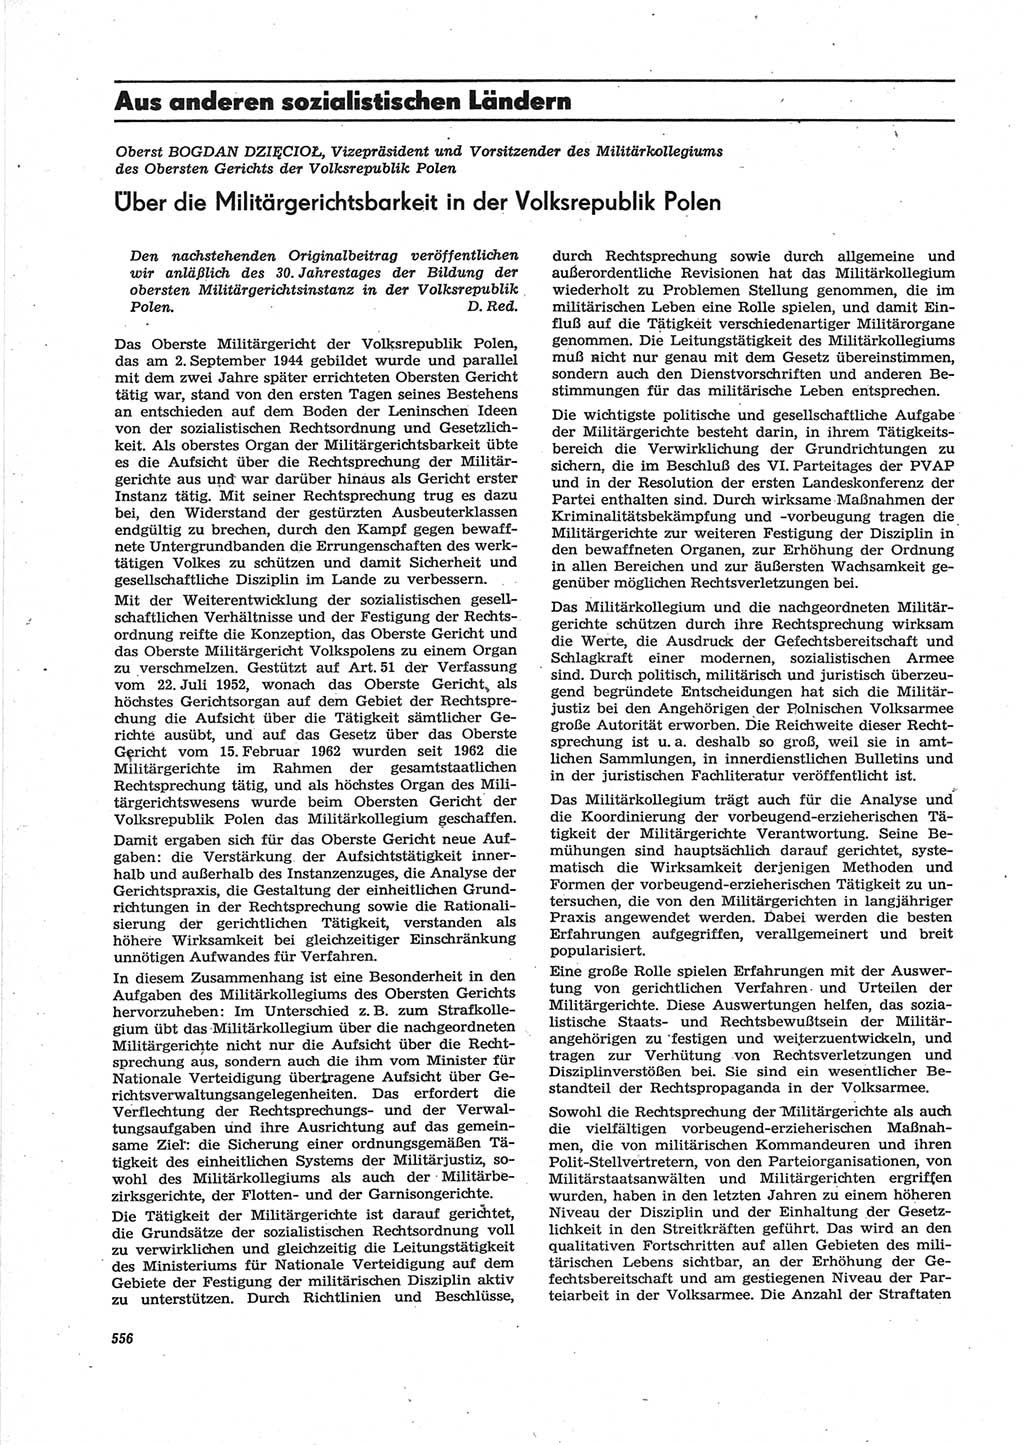 Neue Justiz (NJ), Zeitschrift für Recht und Rechtswissenschaft [Deutsche Demokratische Republik (DDR)], 28. Jahrgang 1974, Seite 556 (NJ DDR 1974, S. 556)